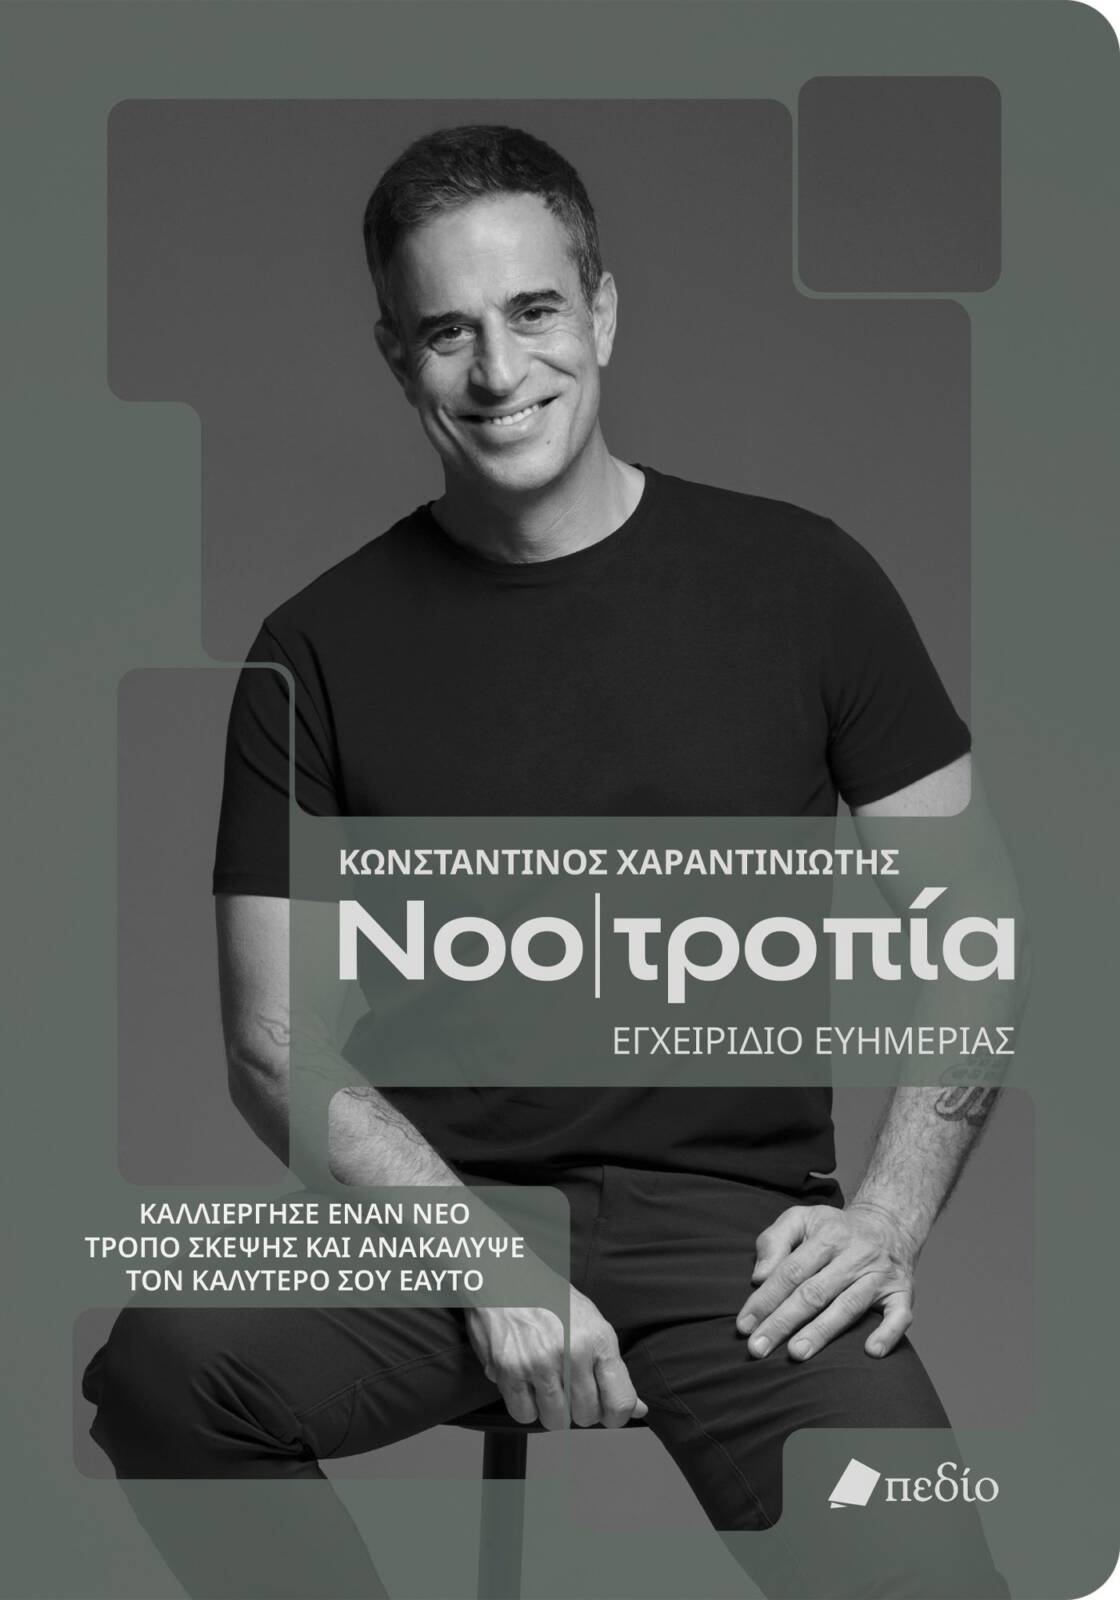 Ο mindset coach Κωνσταντίνος Χαραντινιώτης έρχεται στα Γρεβενά με το βιβλίο του NOO|ΤΡΟΠΙΑ